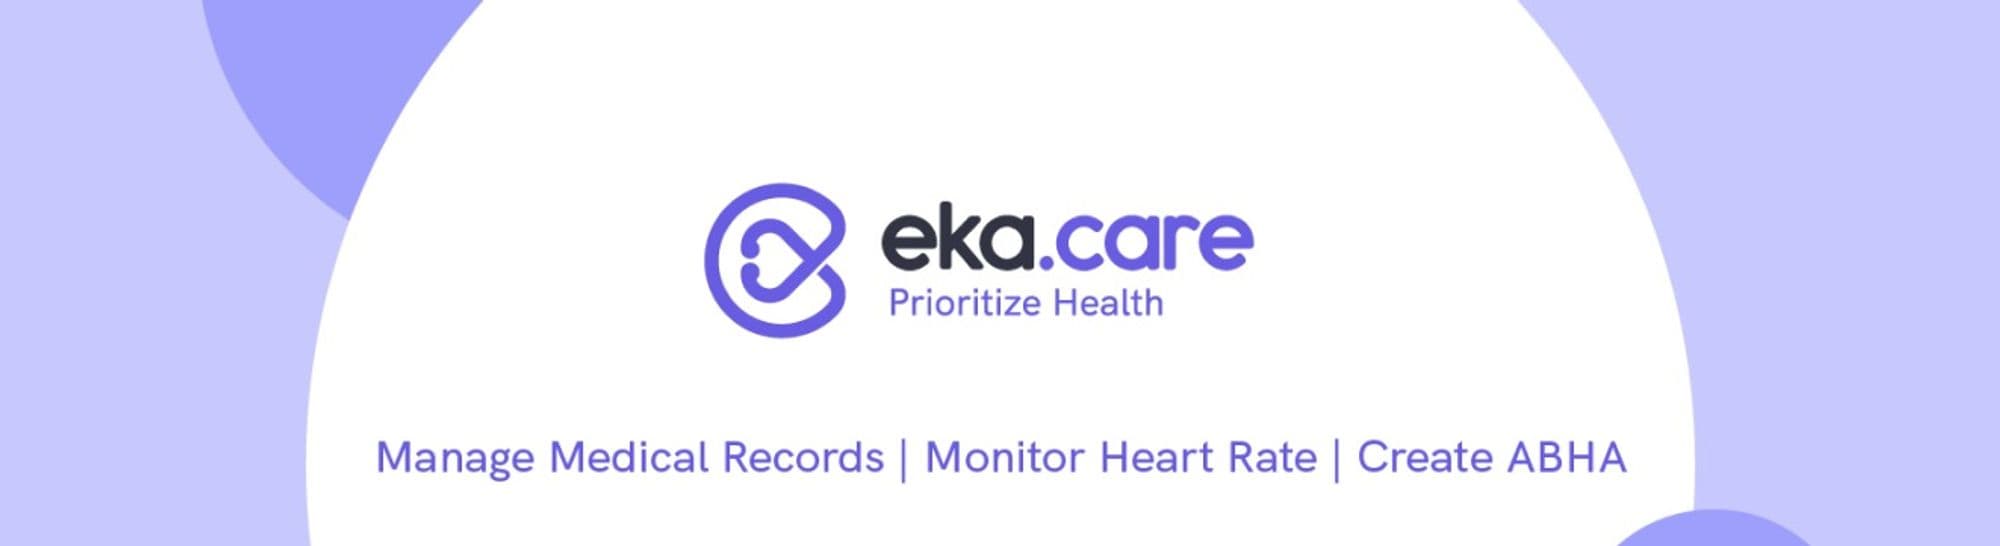 eka.care Cover Image